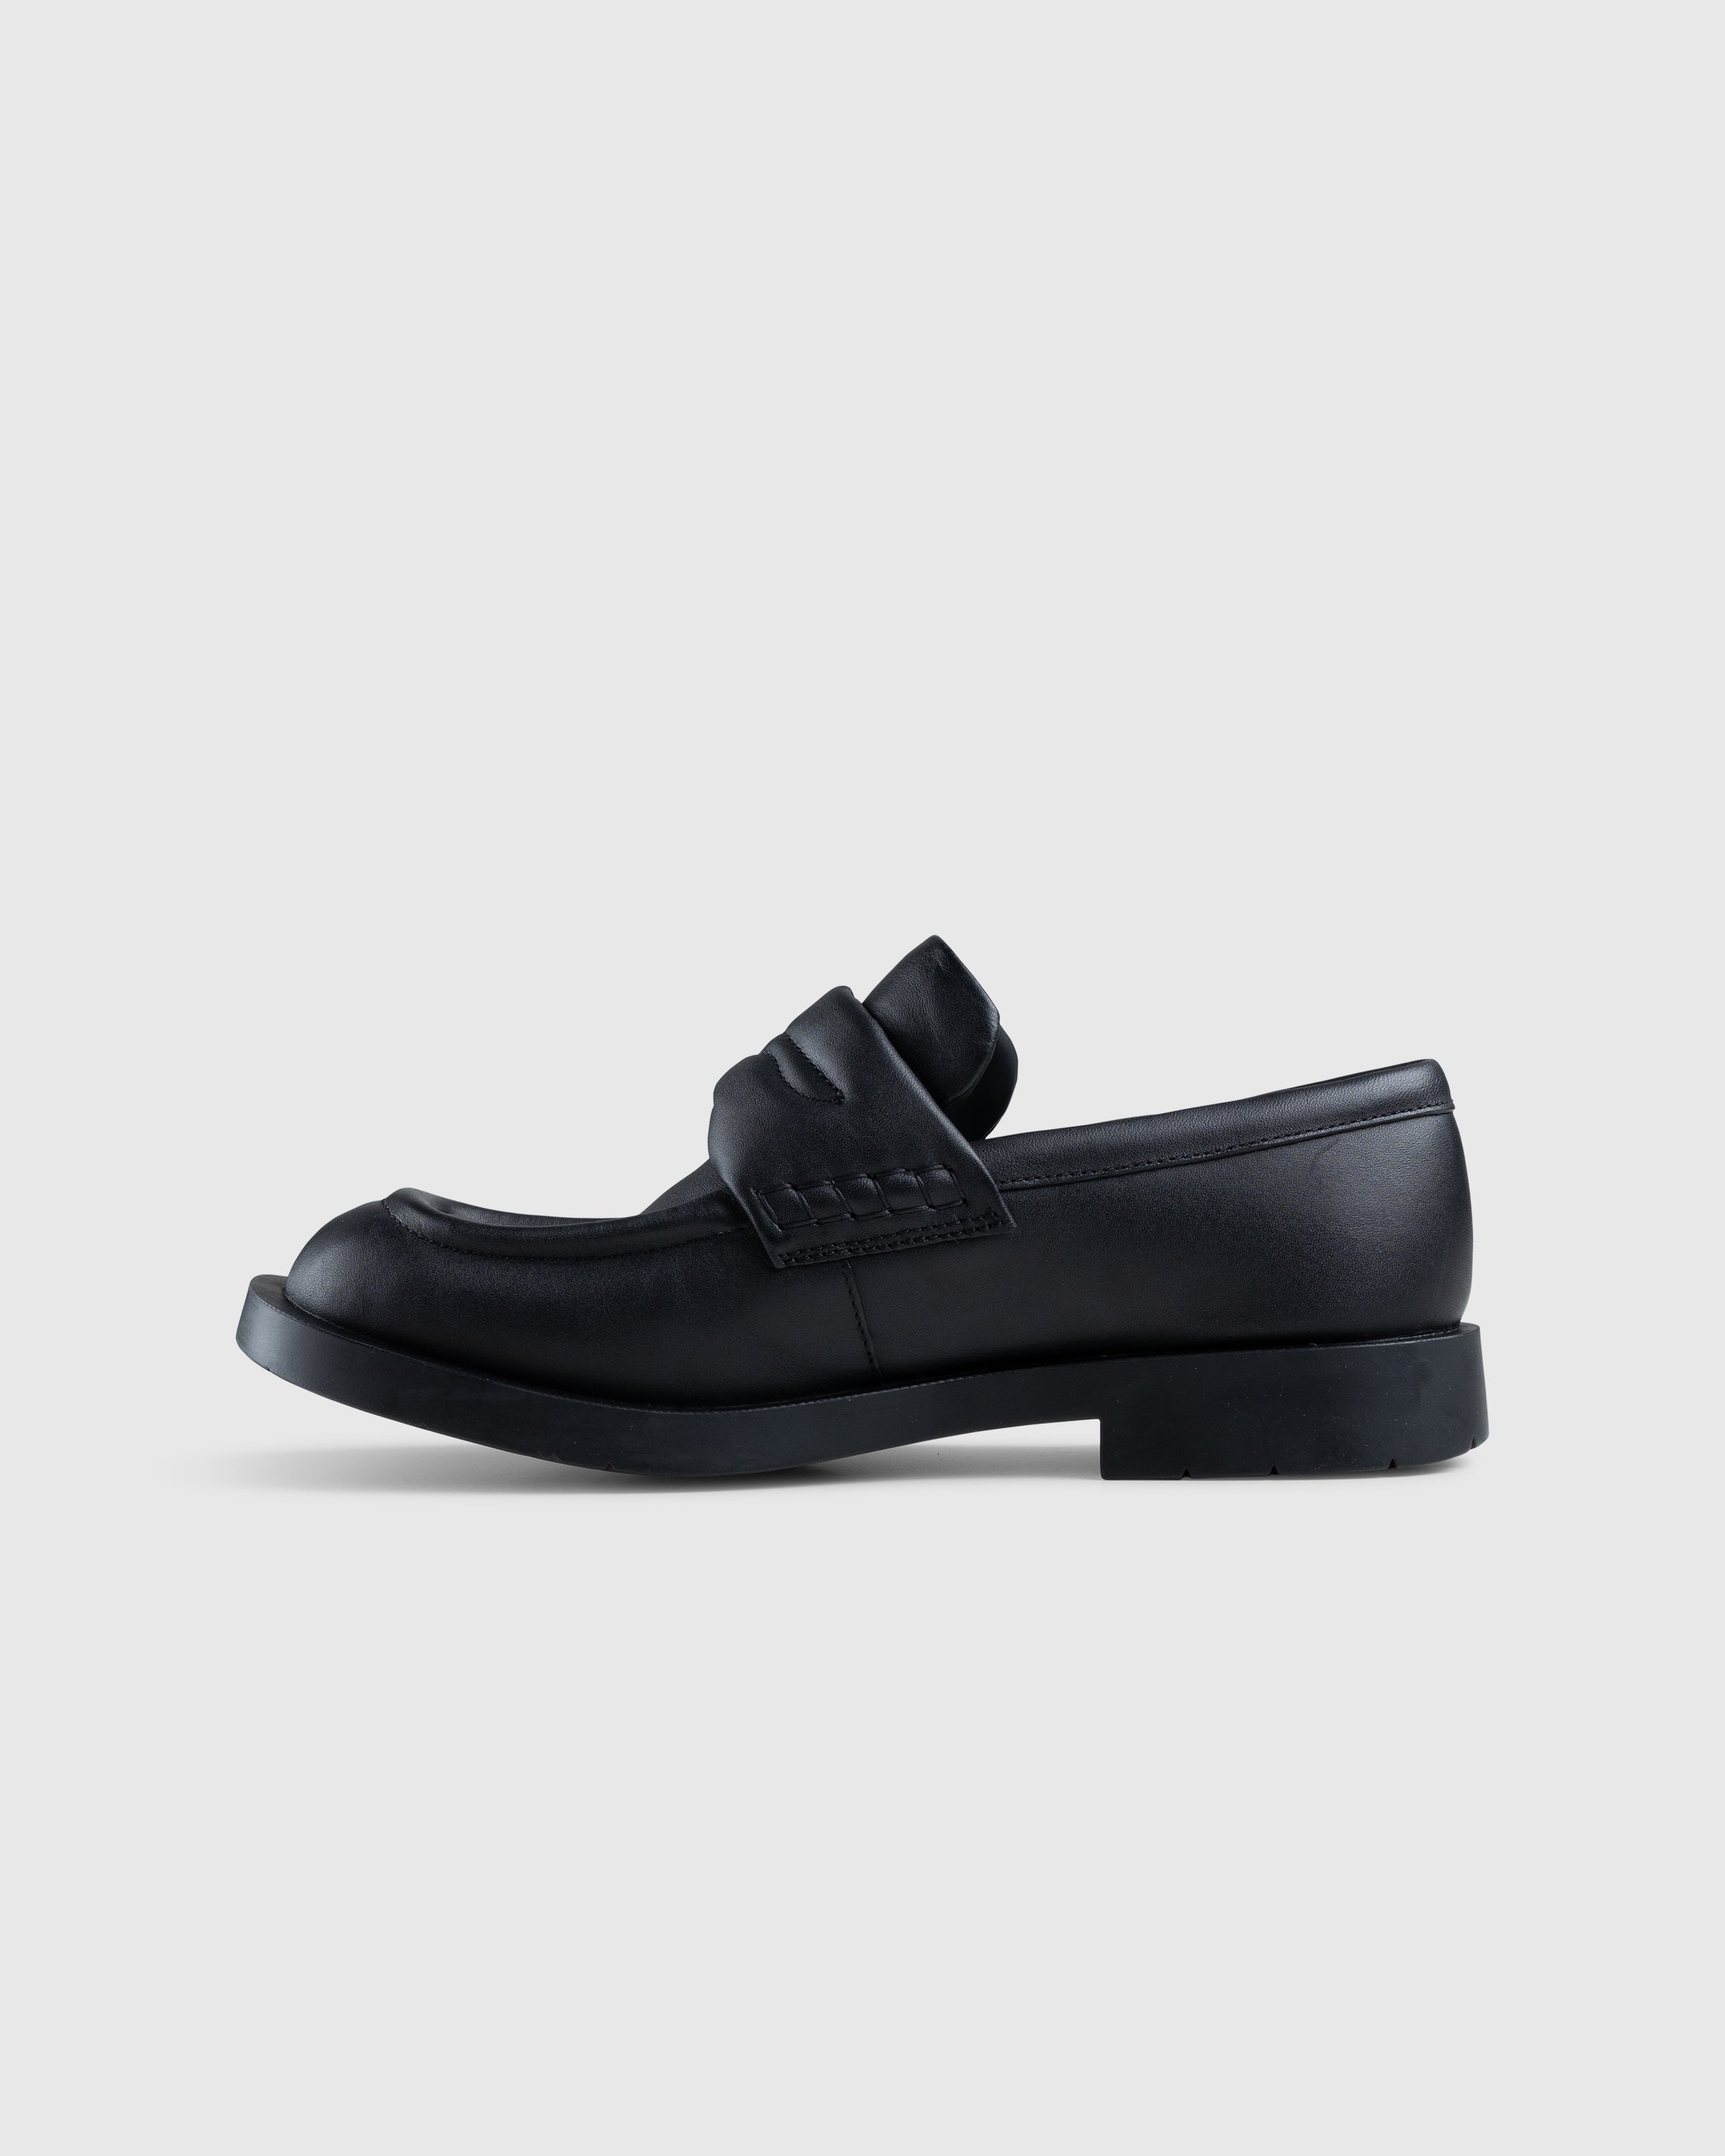 CAMPERLAB - MIL 1978 Loafer Black - Footwear - Black - Image 2